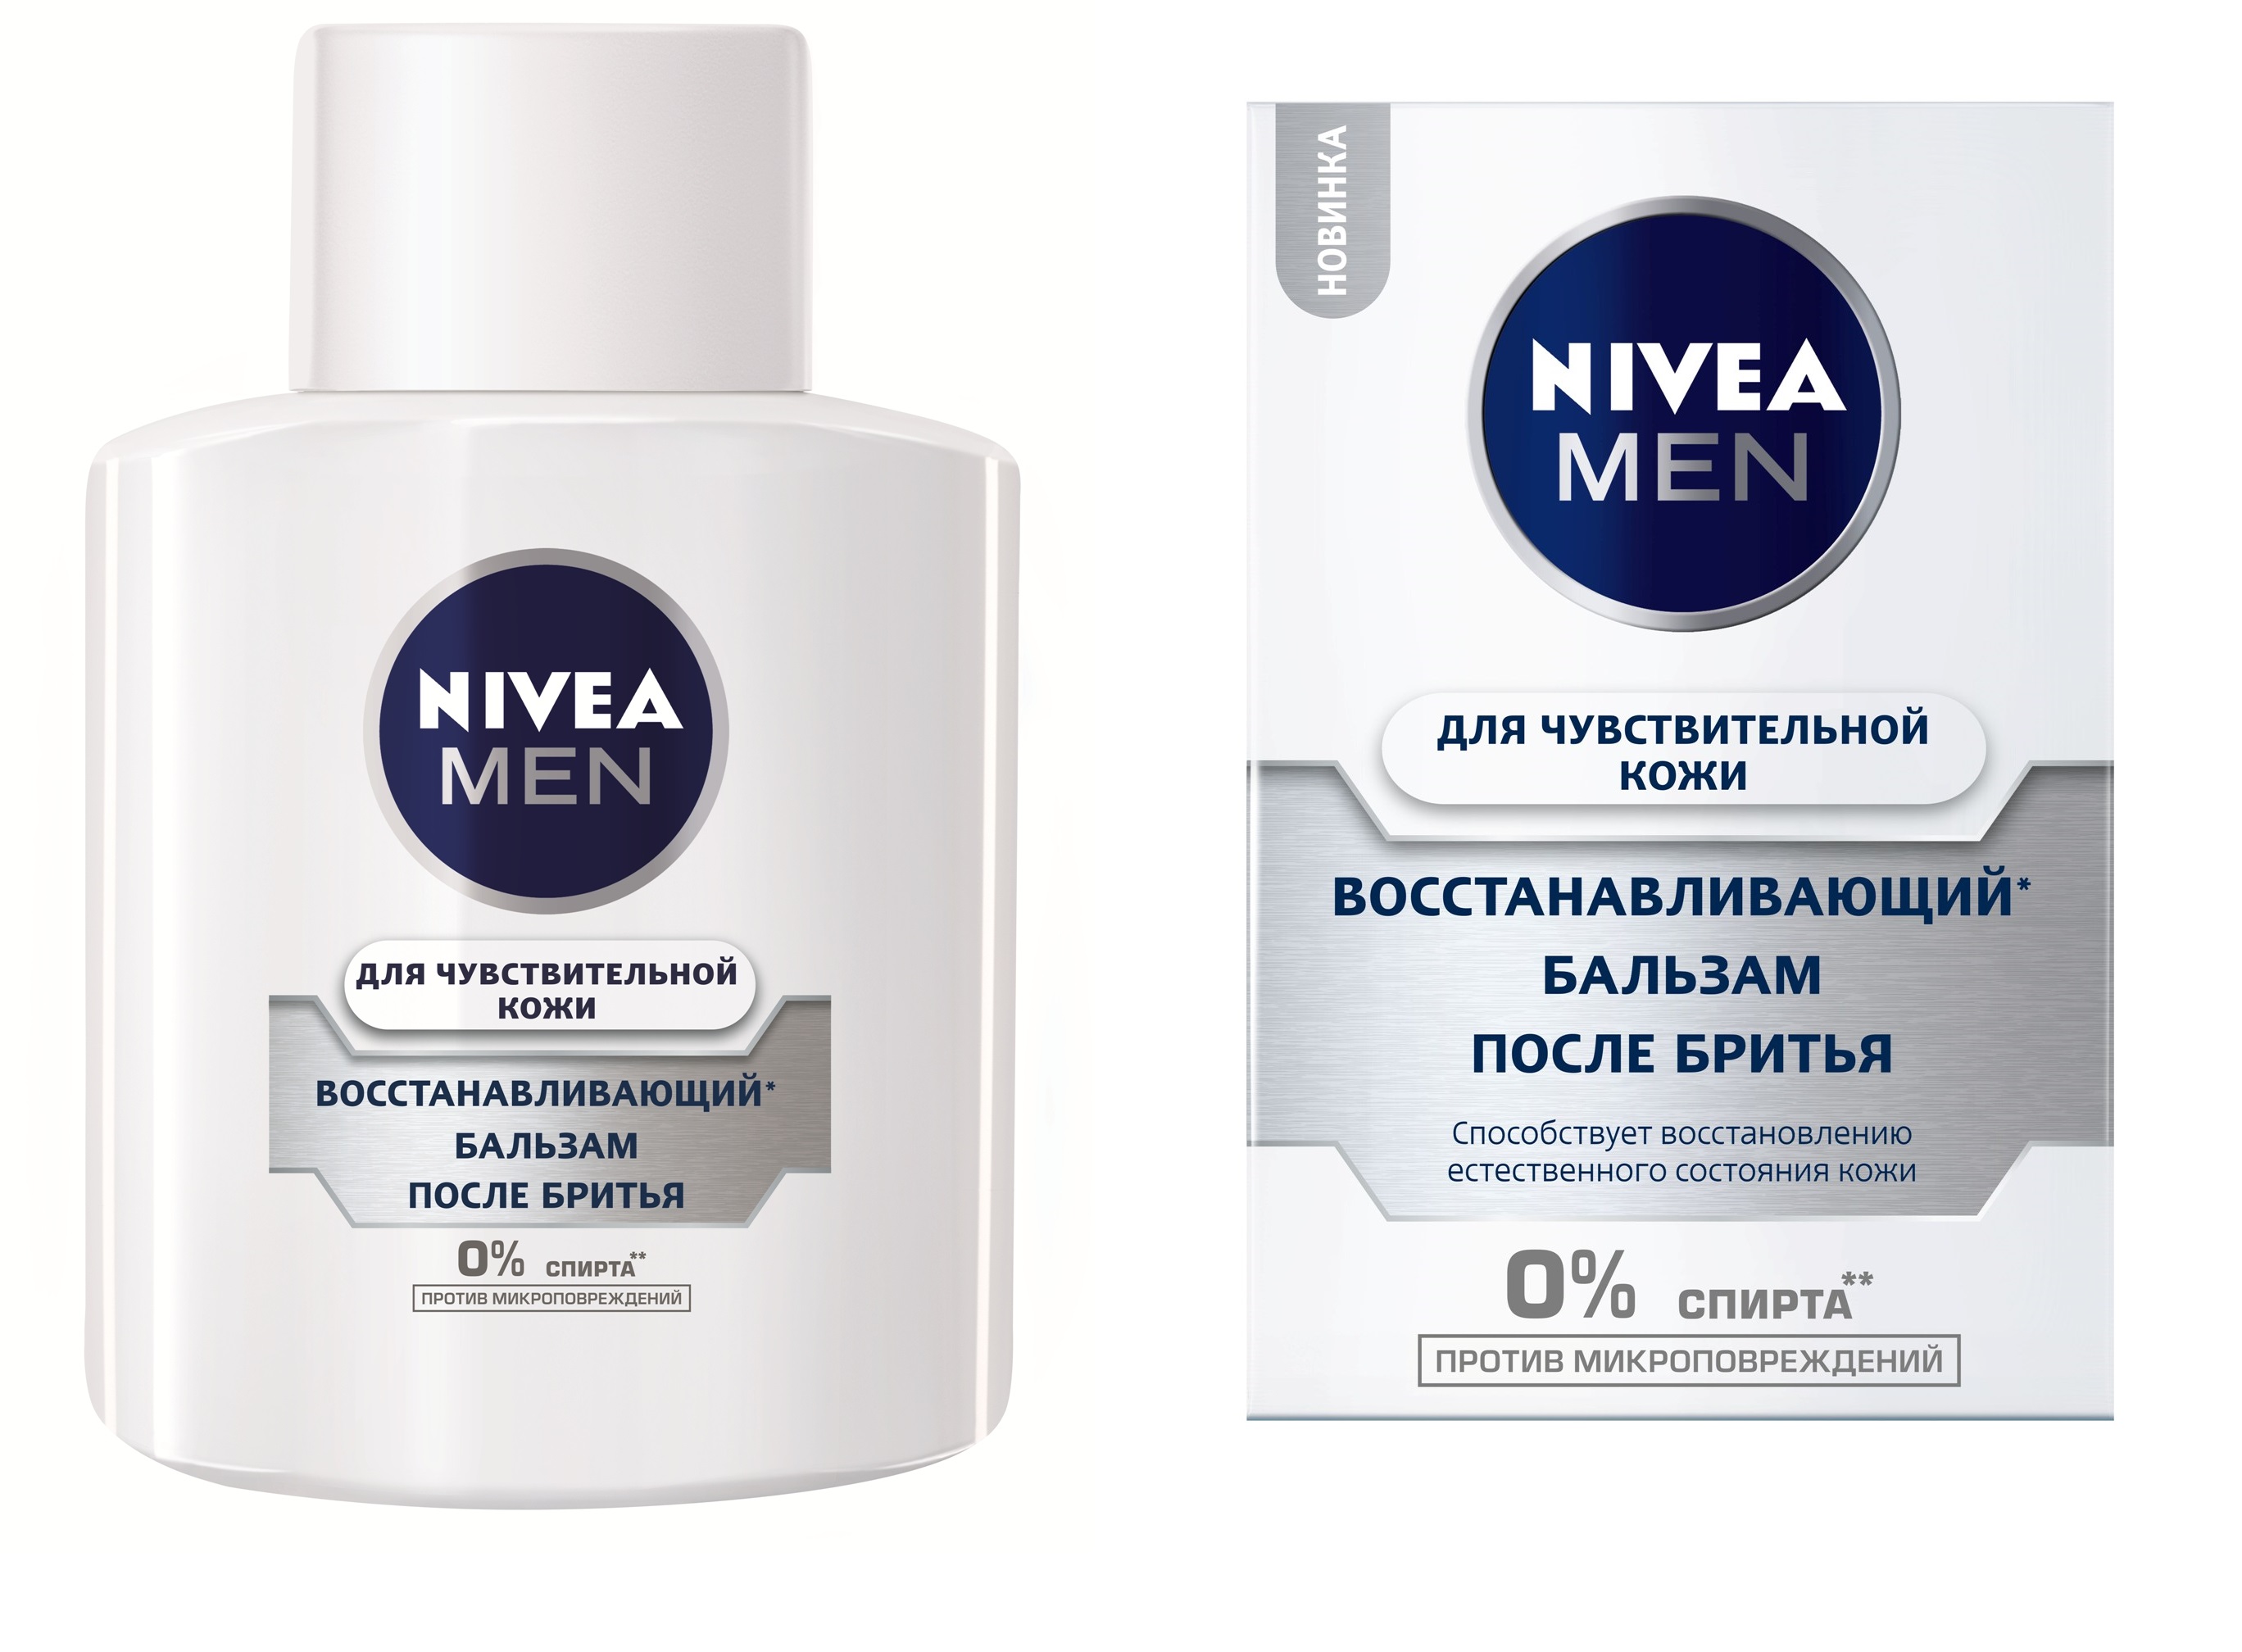 Восстанавливающий бальзам после бритья NIVEA MEN: комфорт и защита от микроповреждений